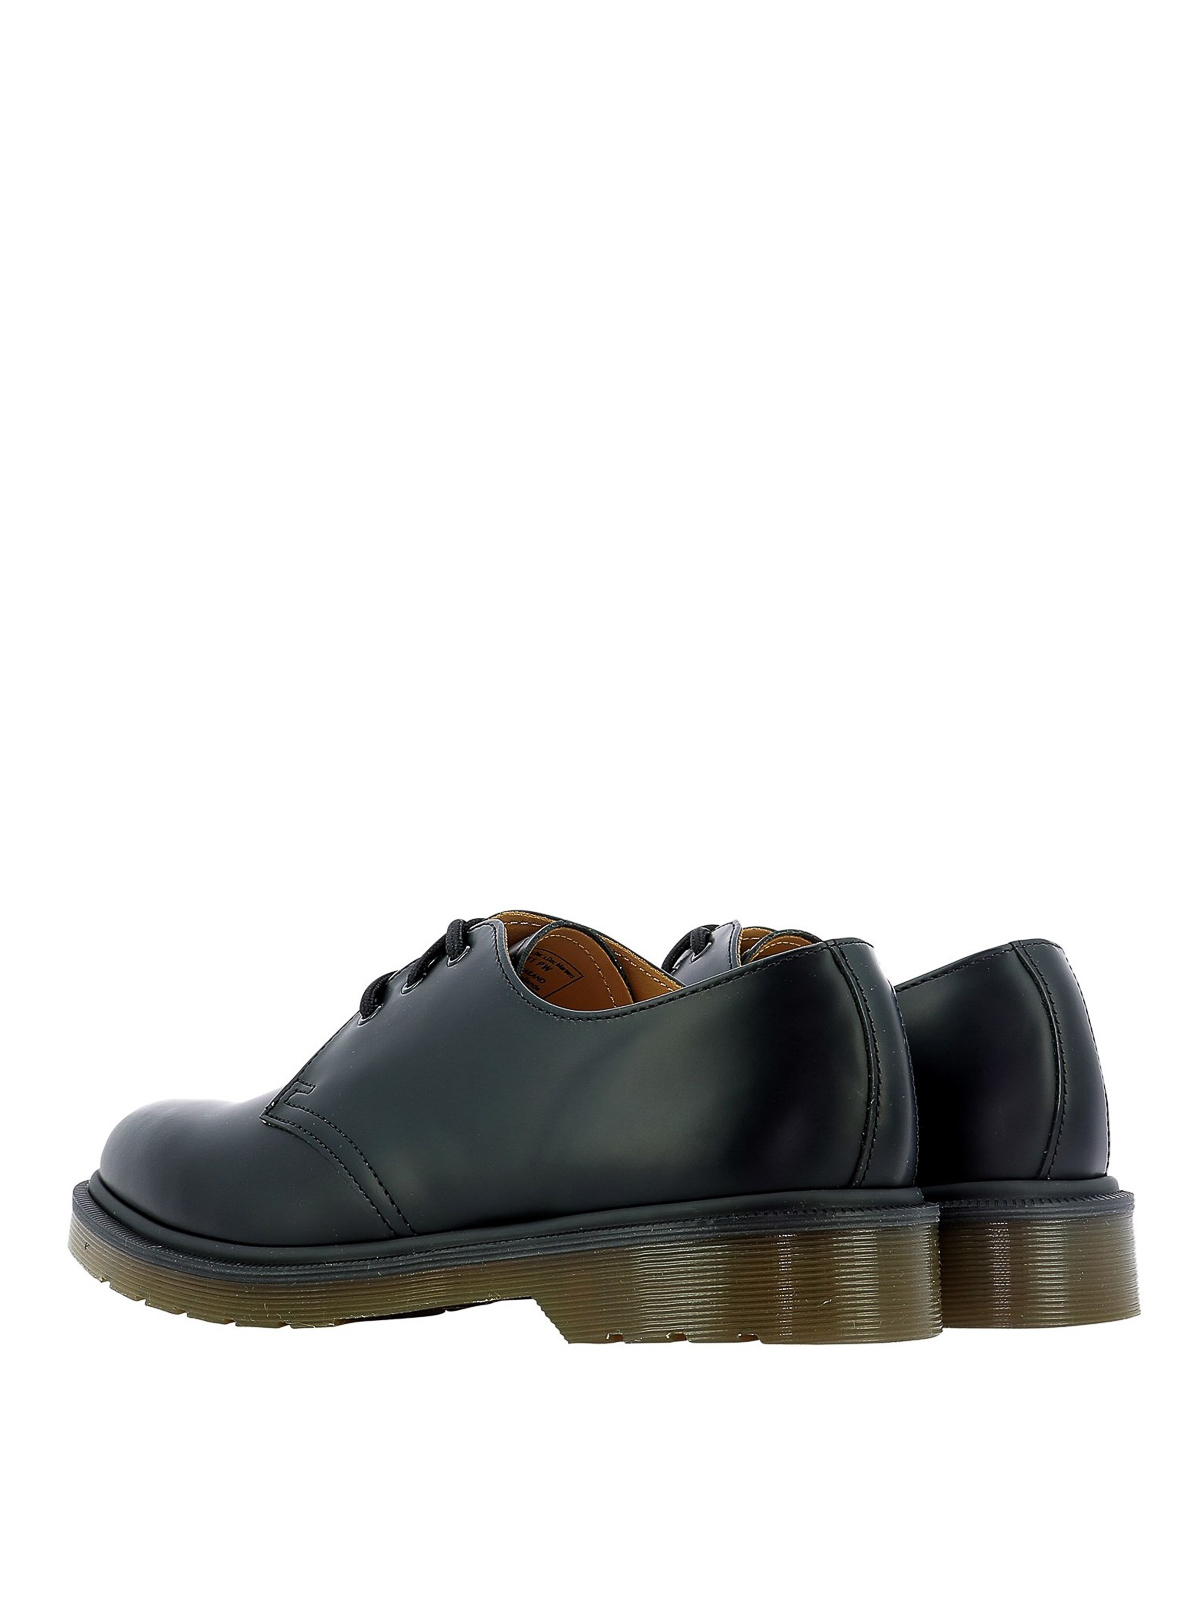 Dr. Martens - 1461 Pw Derby shoes 